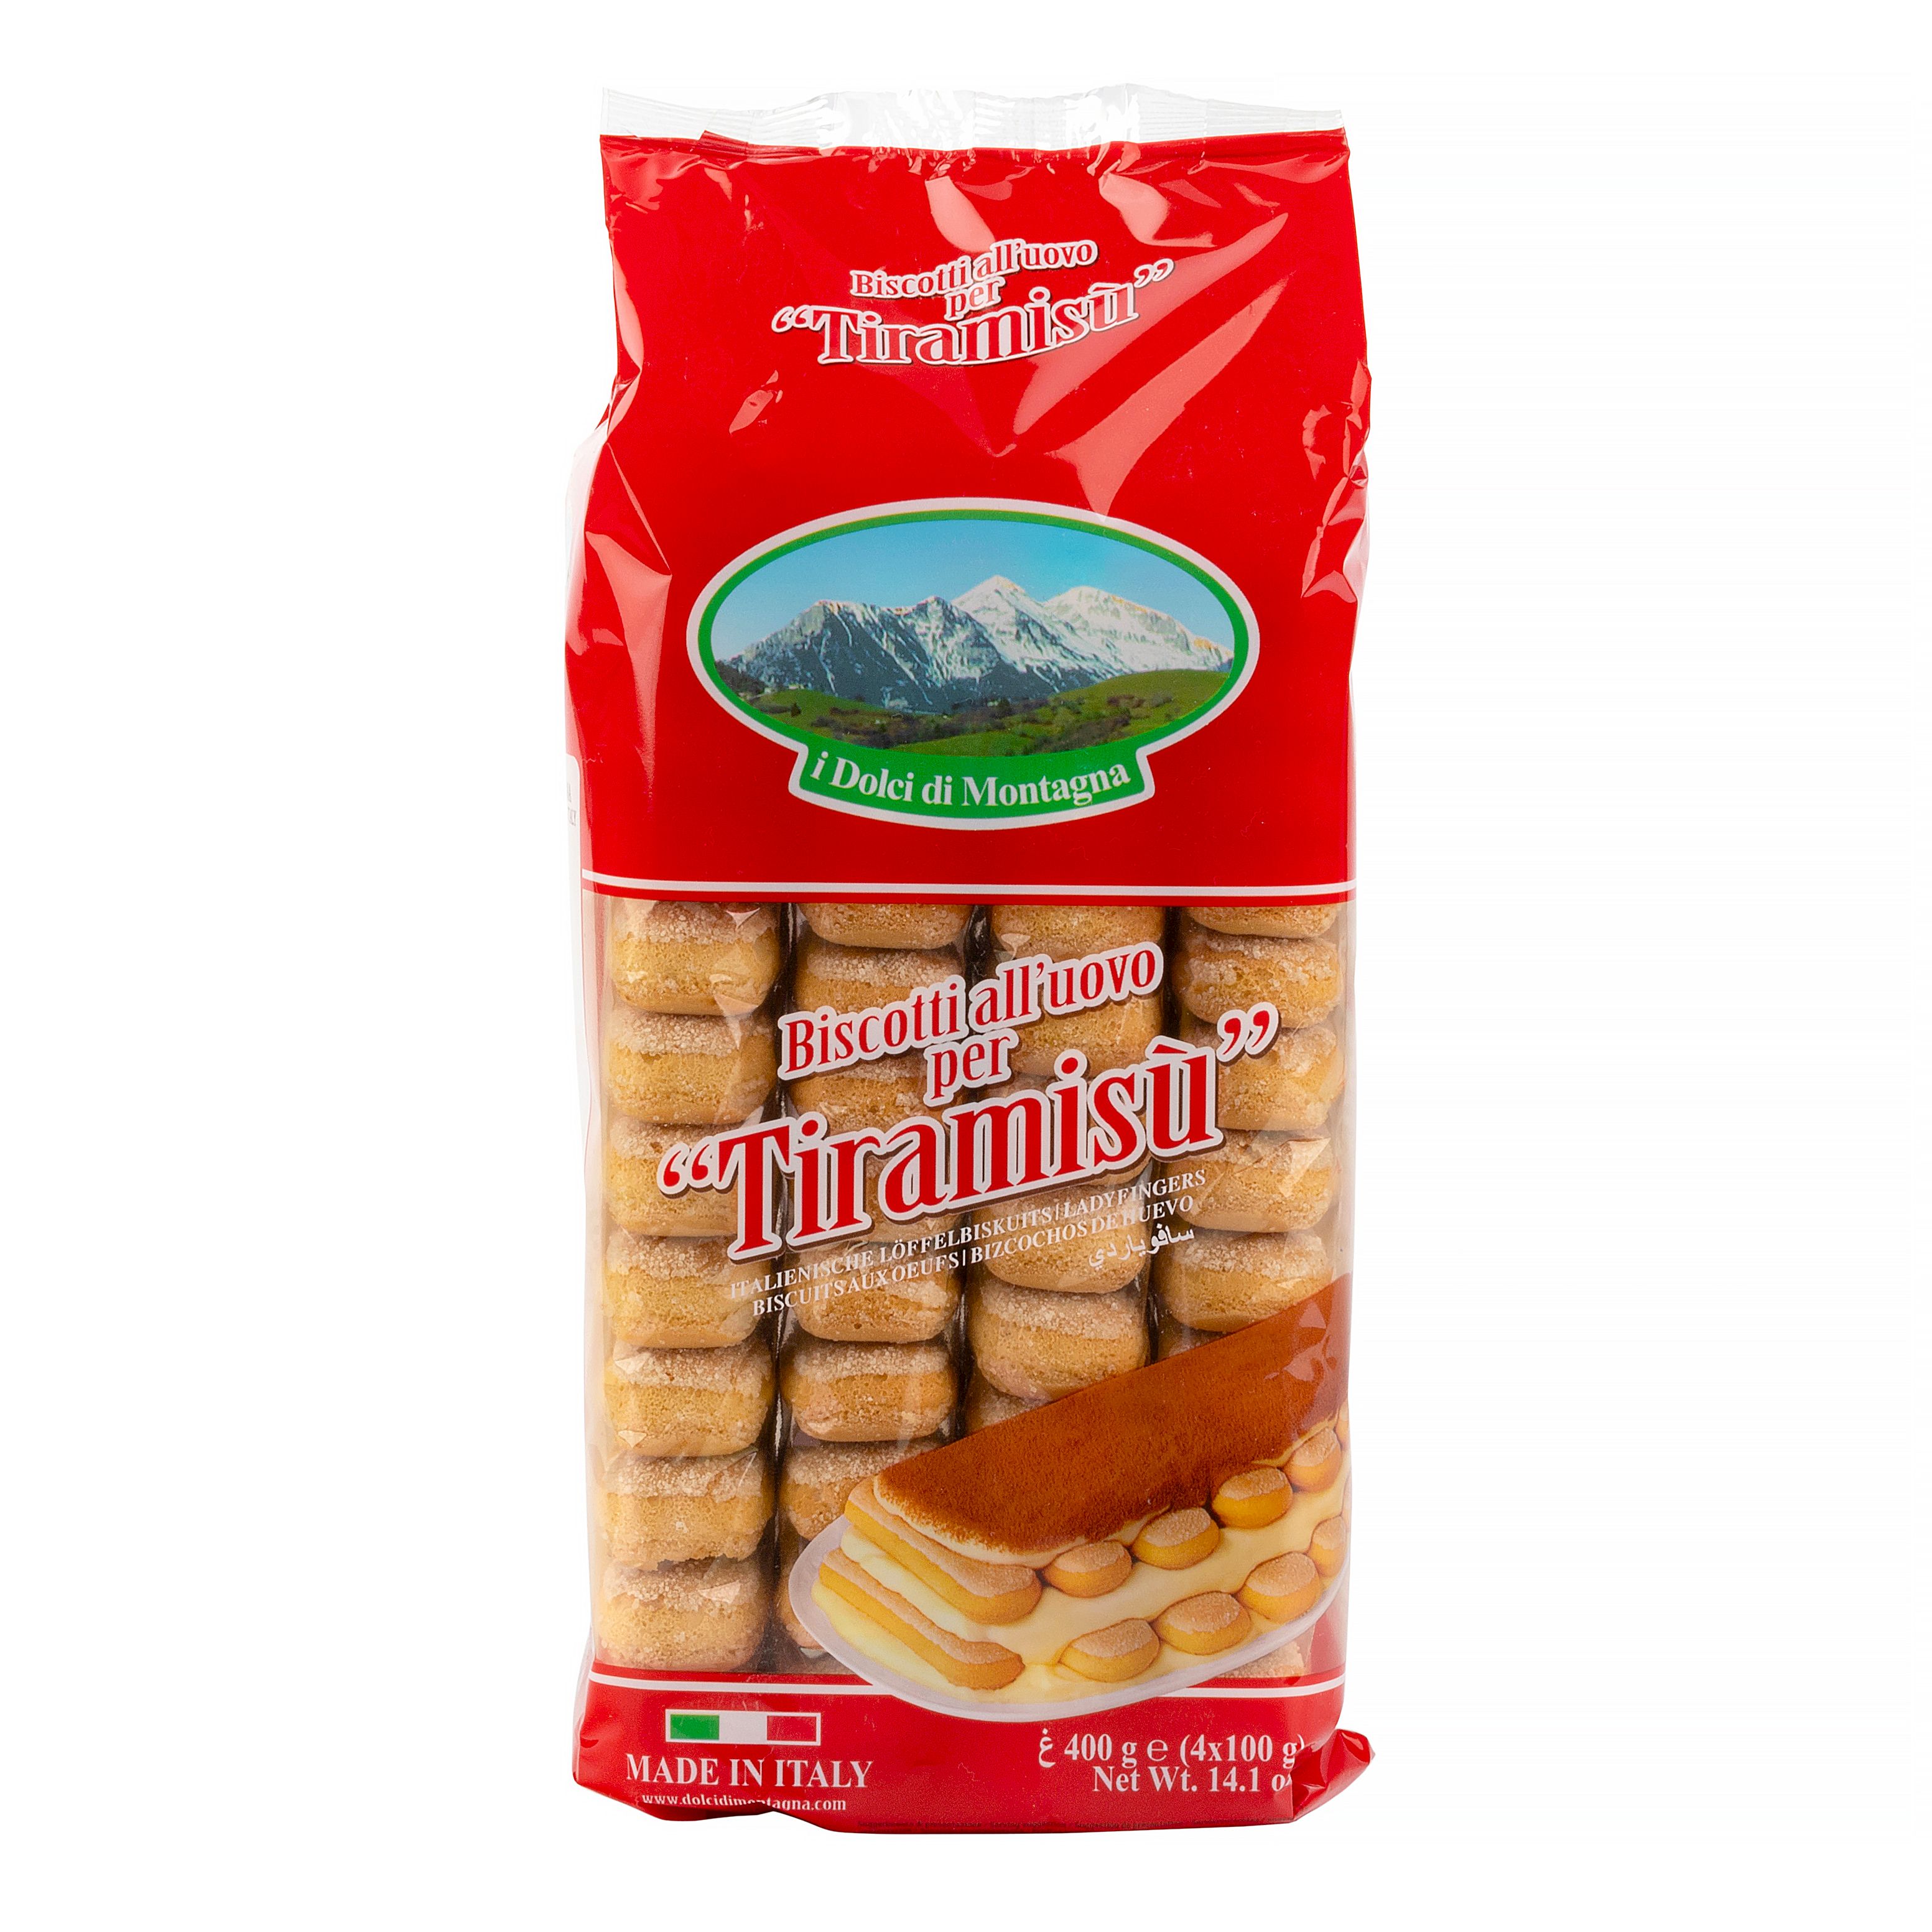 Печенье для тирамису купить. Печенье савоярди i dolci di montagna. Савоярди Бономи. Савоярди dolci di montagna 400г. Печенье савоярди сахарное для тирамису ТМ "I dolci di montagna" (0,400 кг).